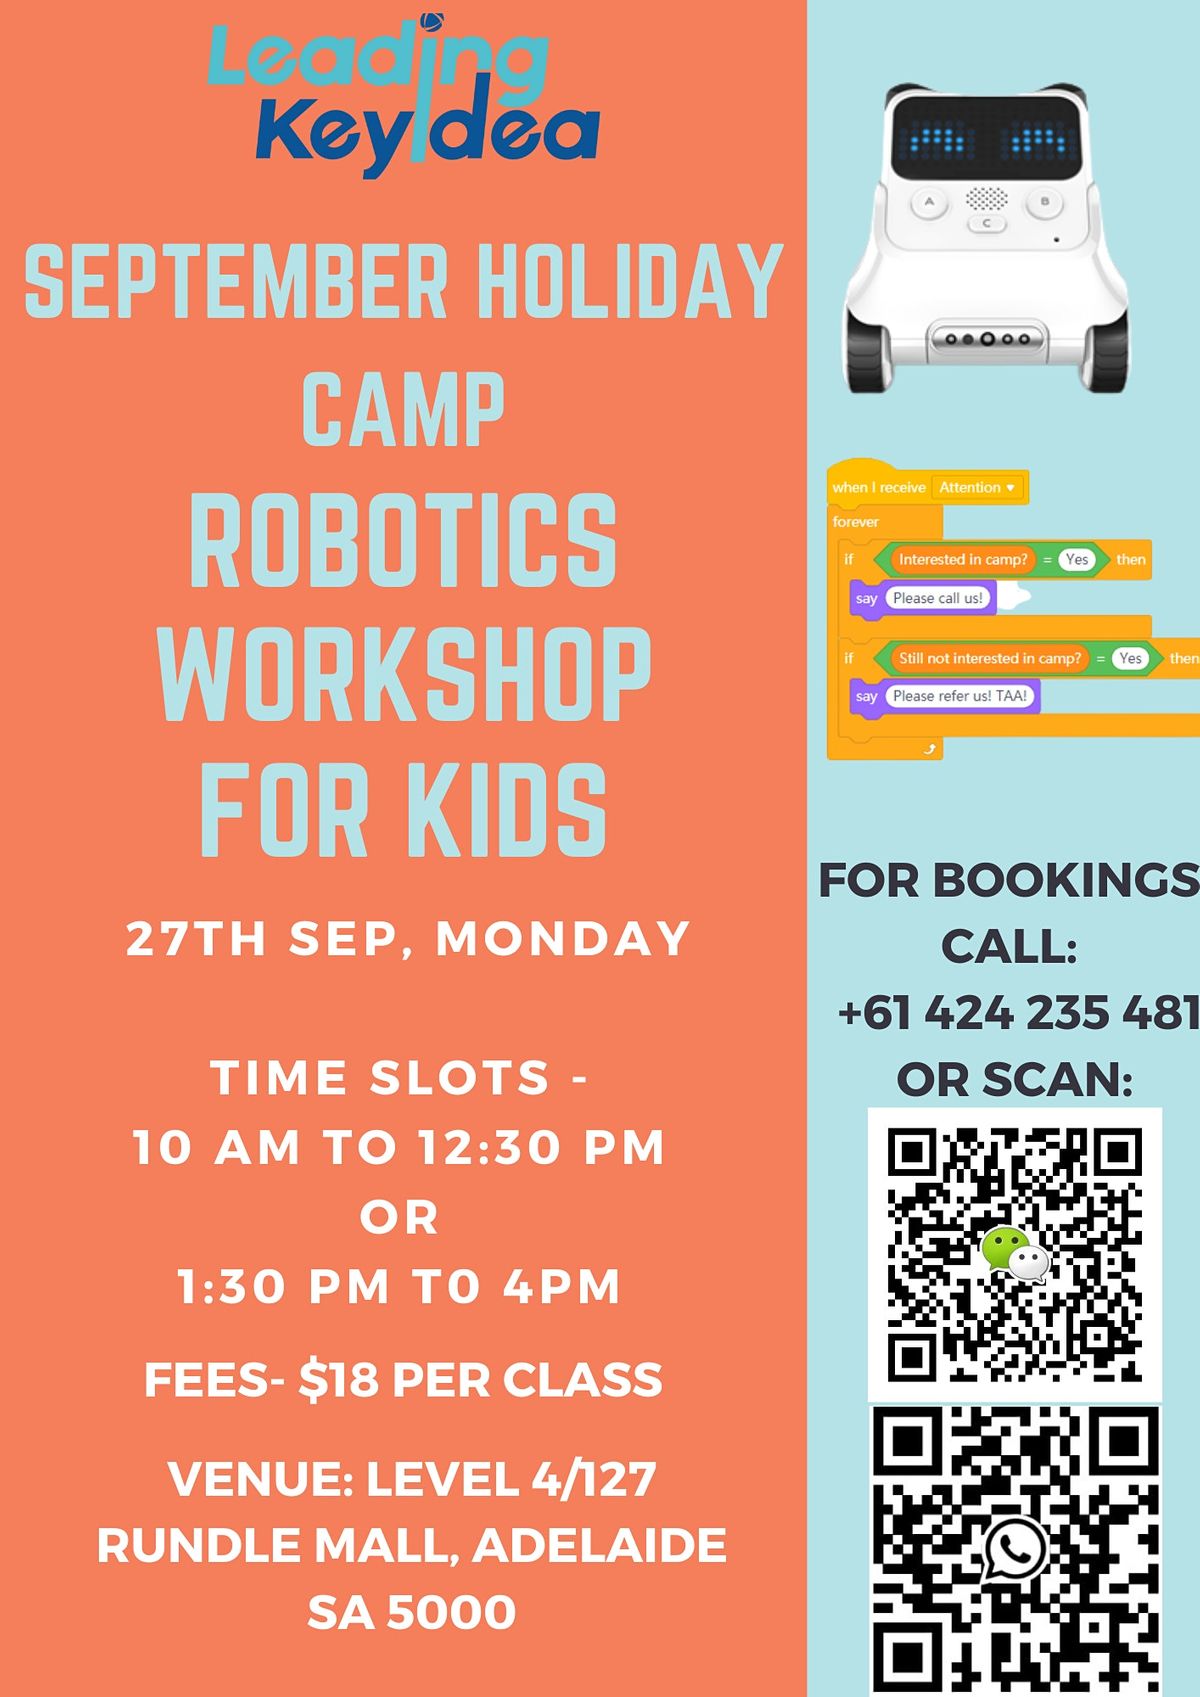 Robotics Workshop for Kids in Adelaide CBD